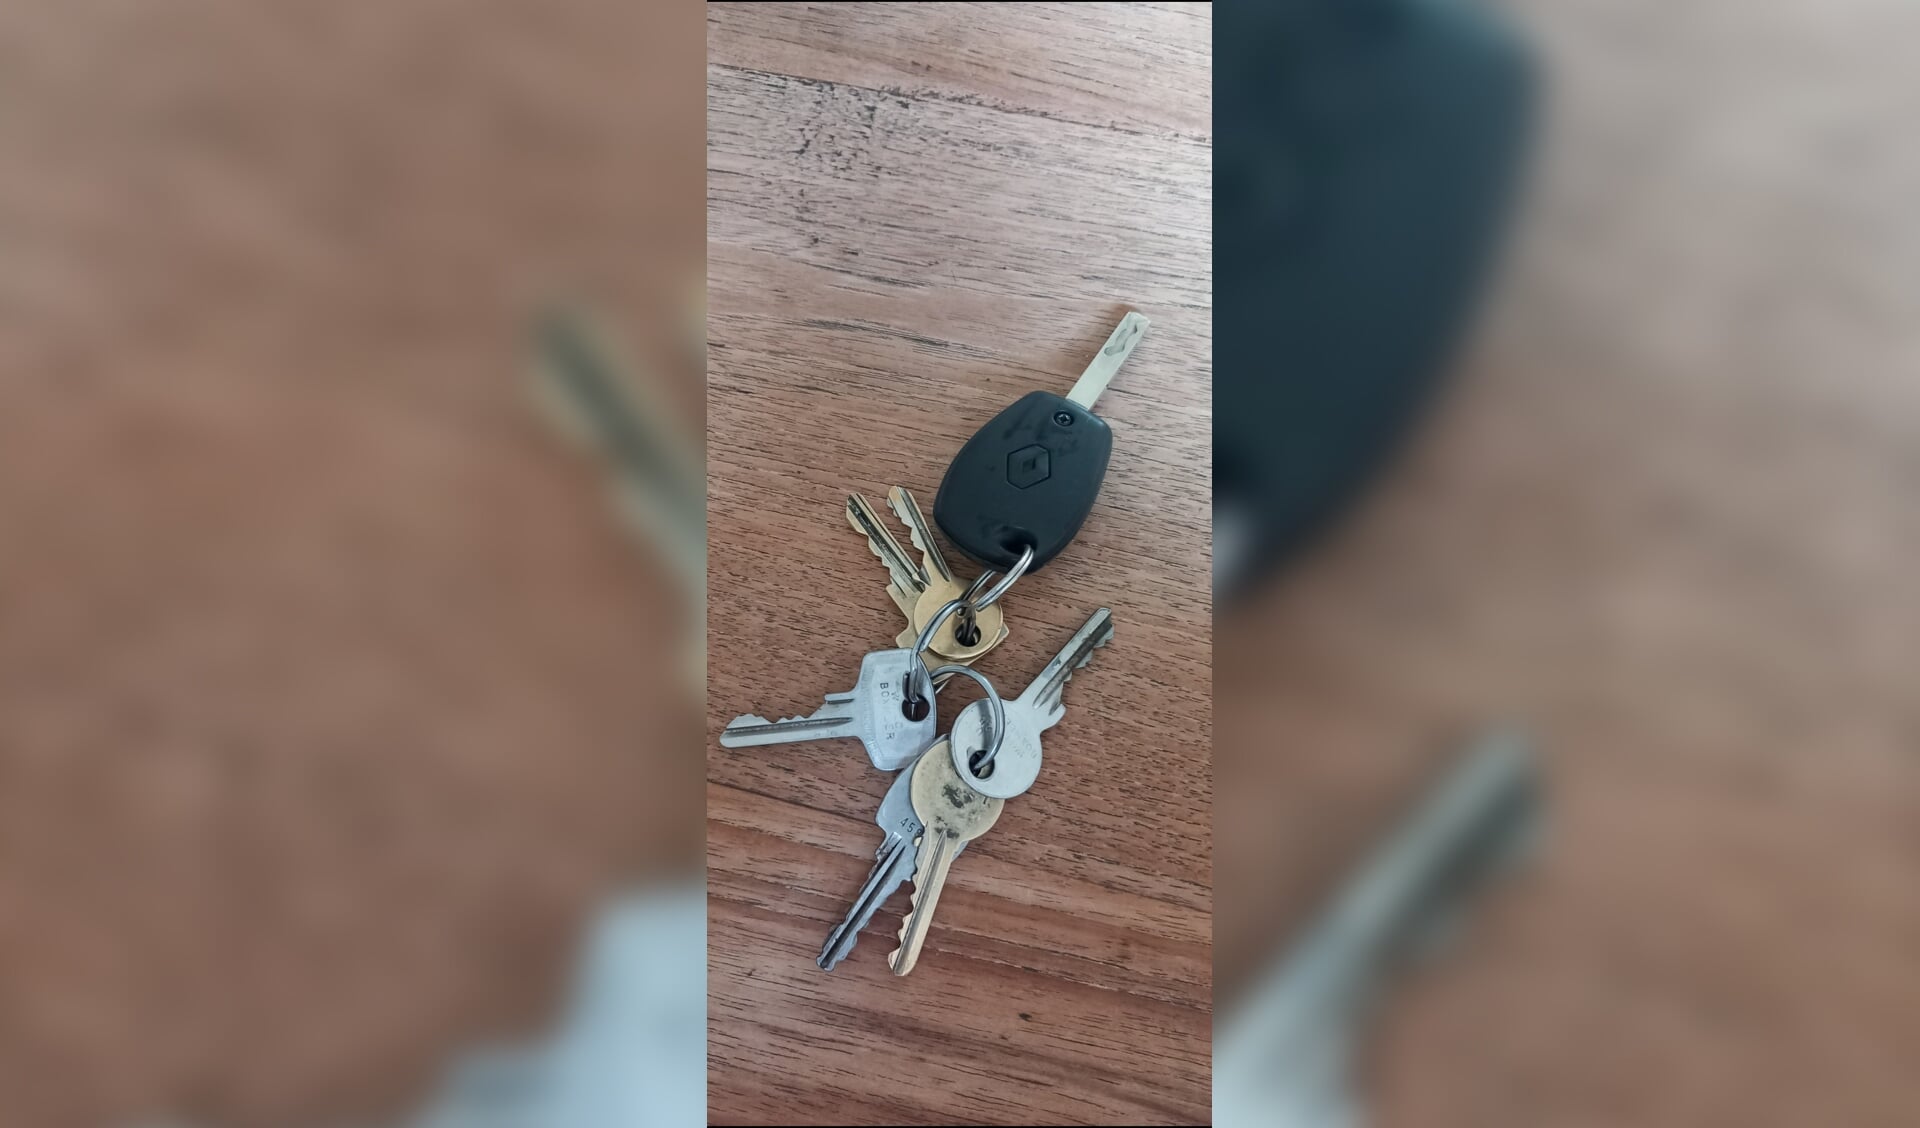 Van wie is deze sleutelbos? 